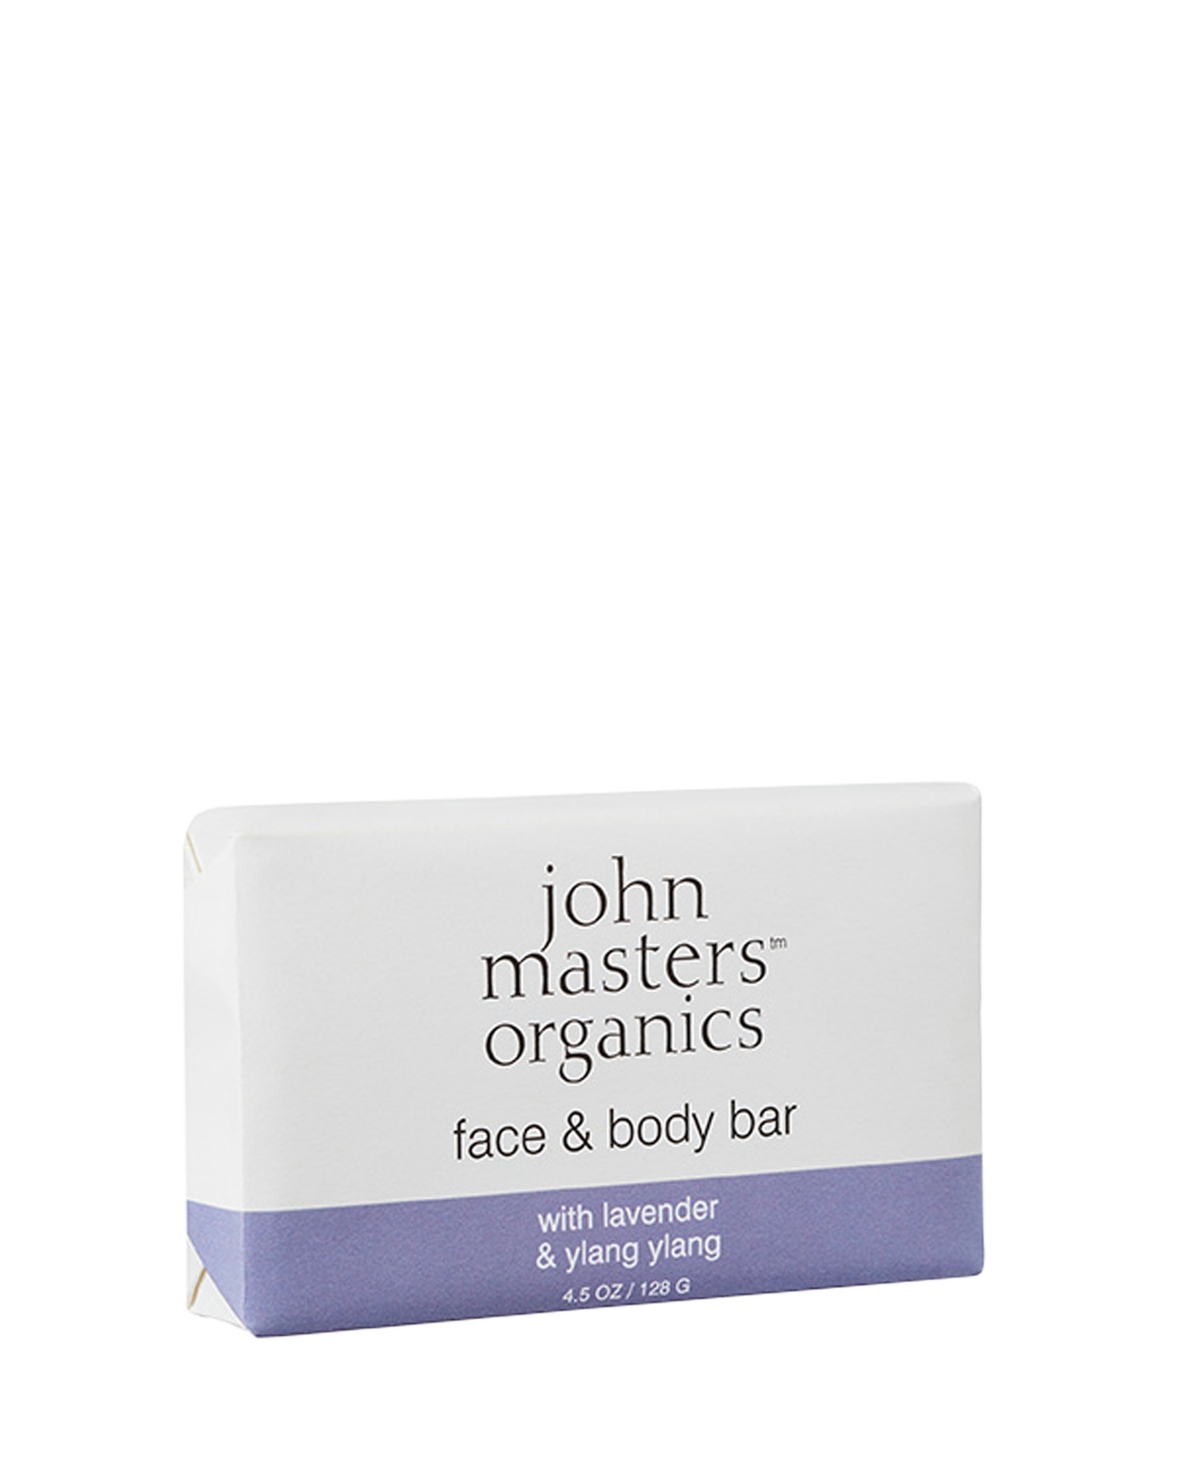 John Masters Organics Face Body Bar with Lavender Ylang Ylang- 4.5 fl. oz.